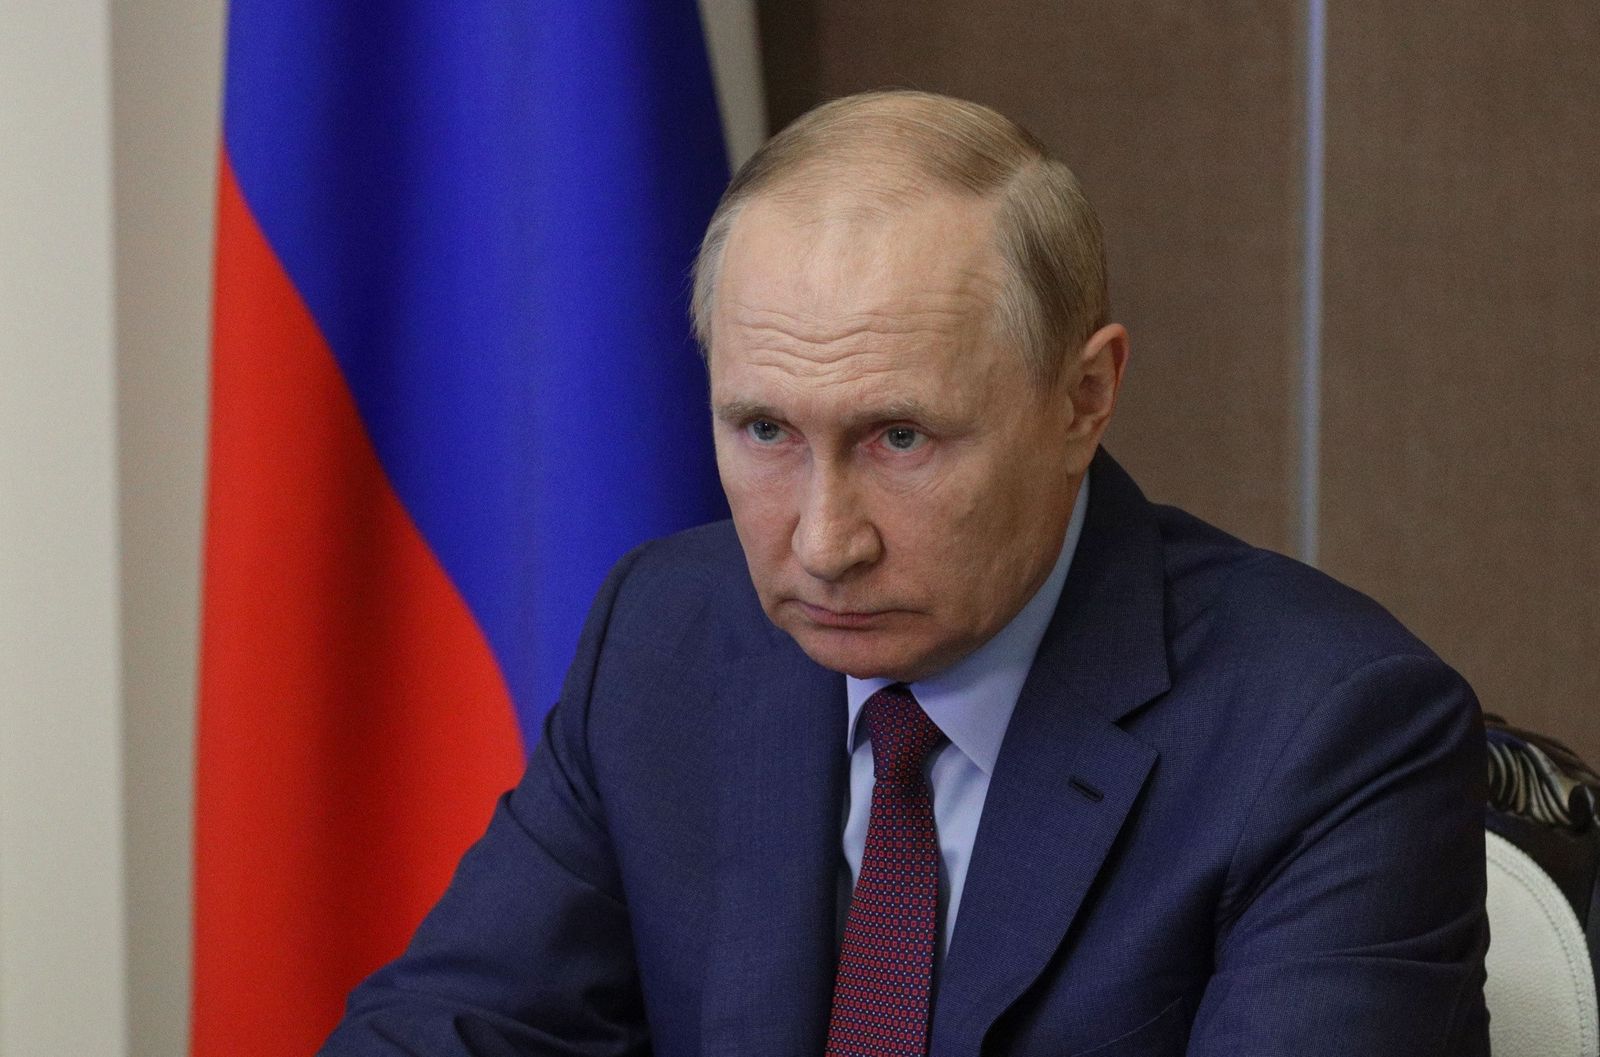 حرب بوتين تمنح اقتصاد روسيا دفعة هادئة متجاوزة أسوأ التوقعات وسط العقوبات 